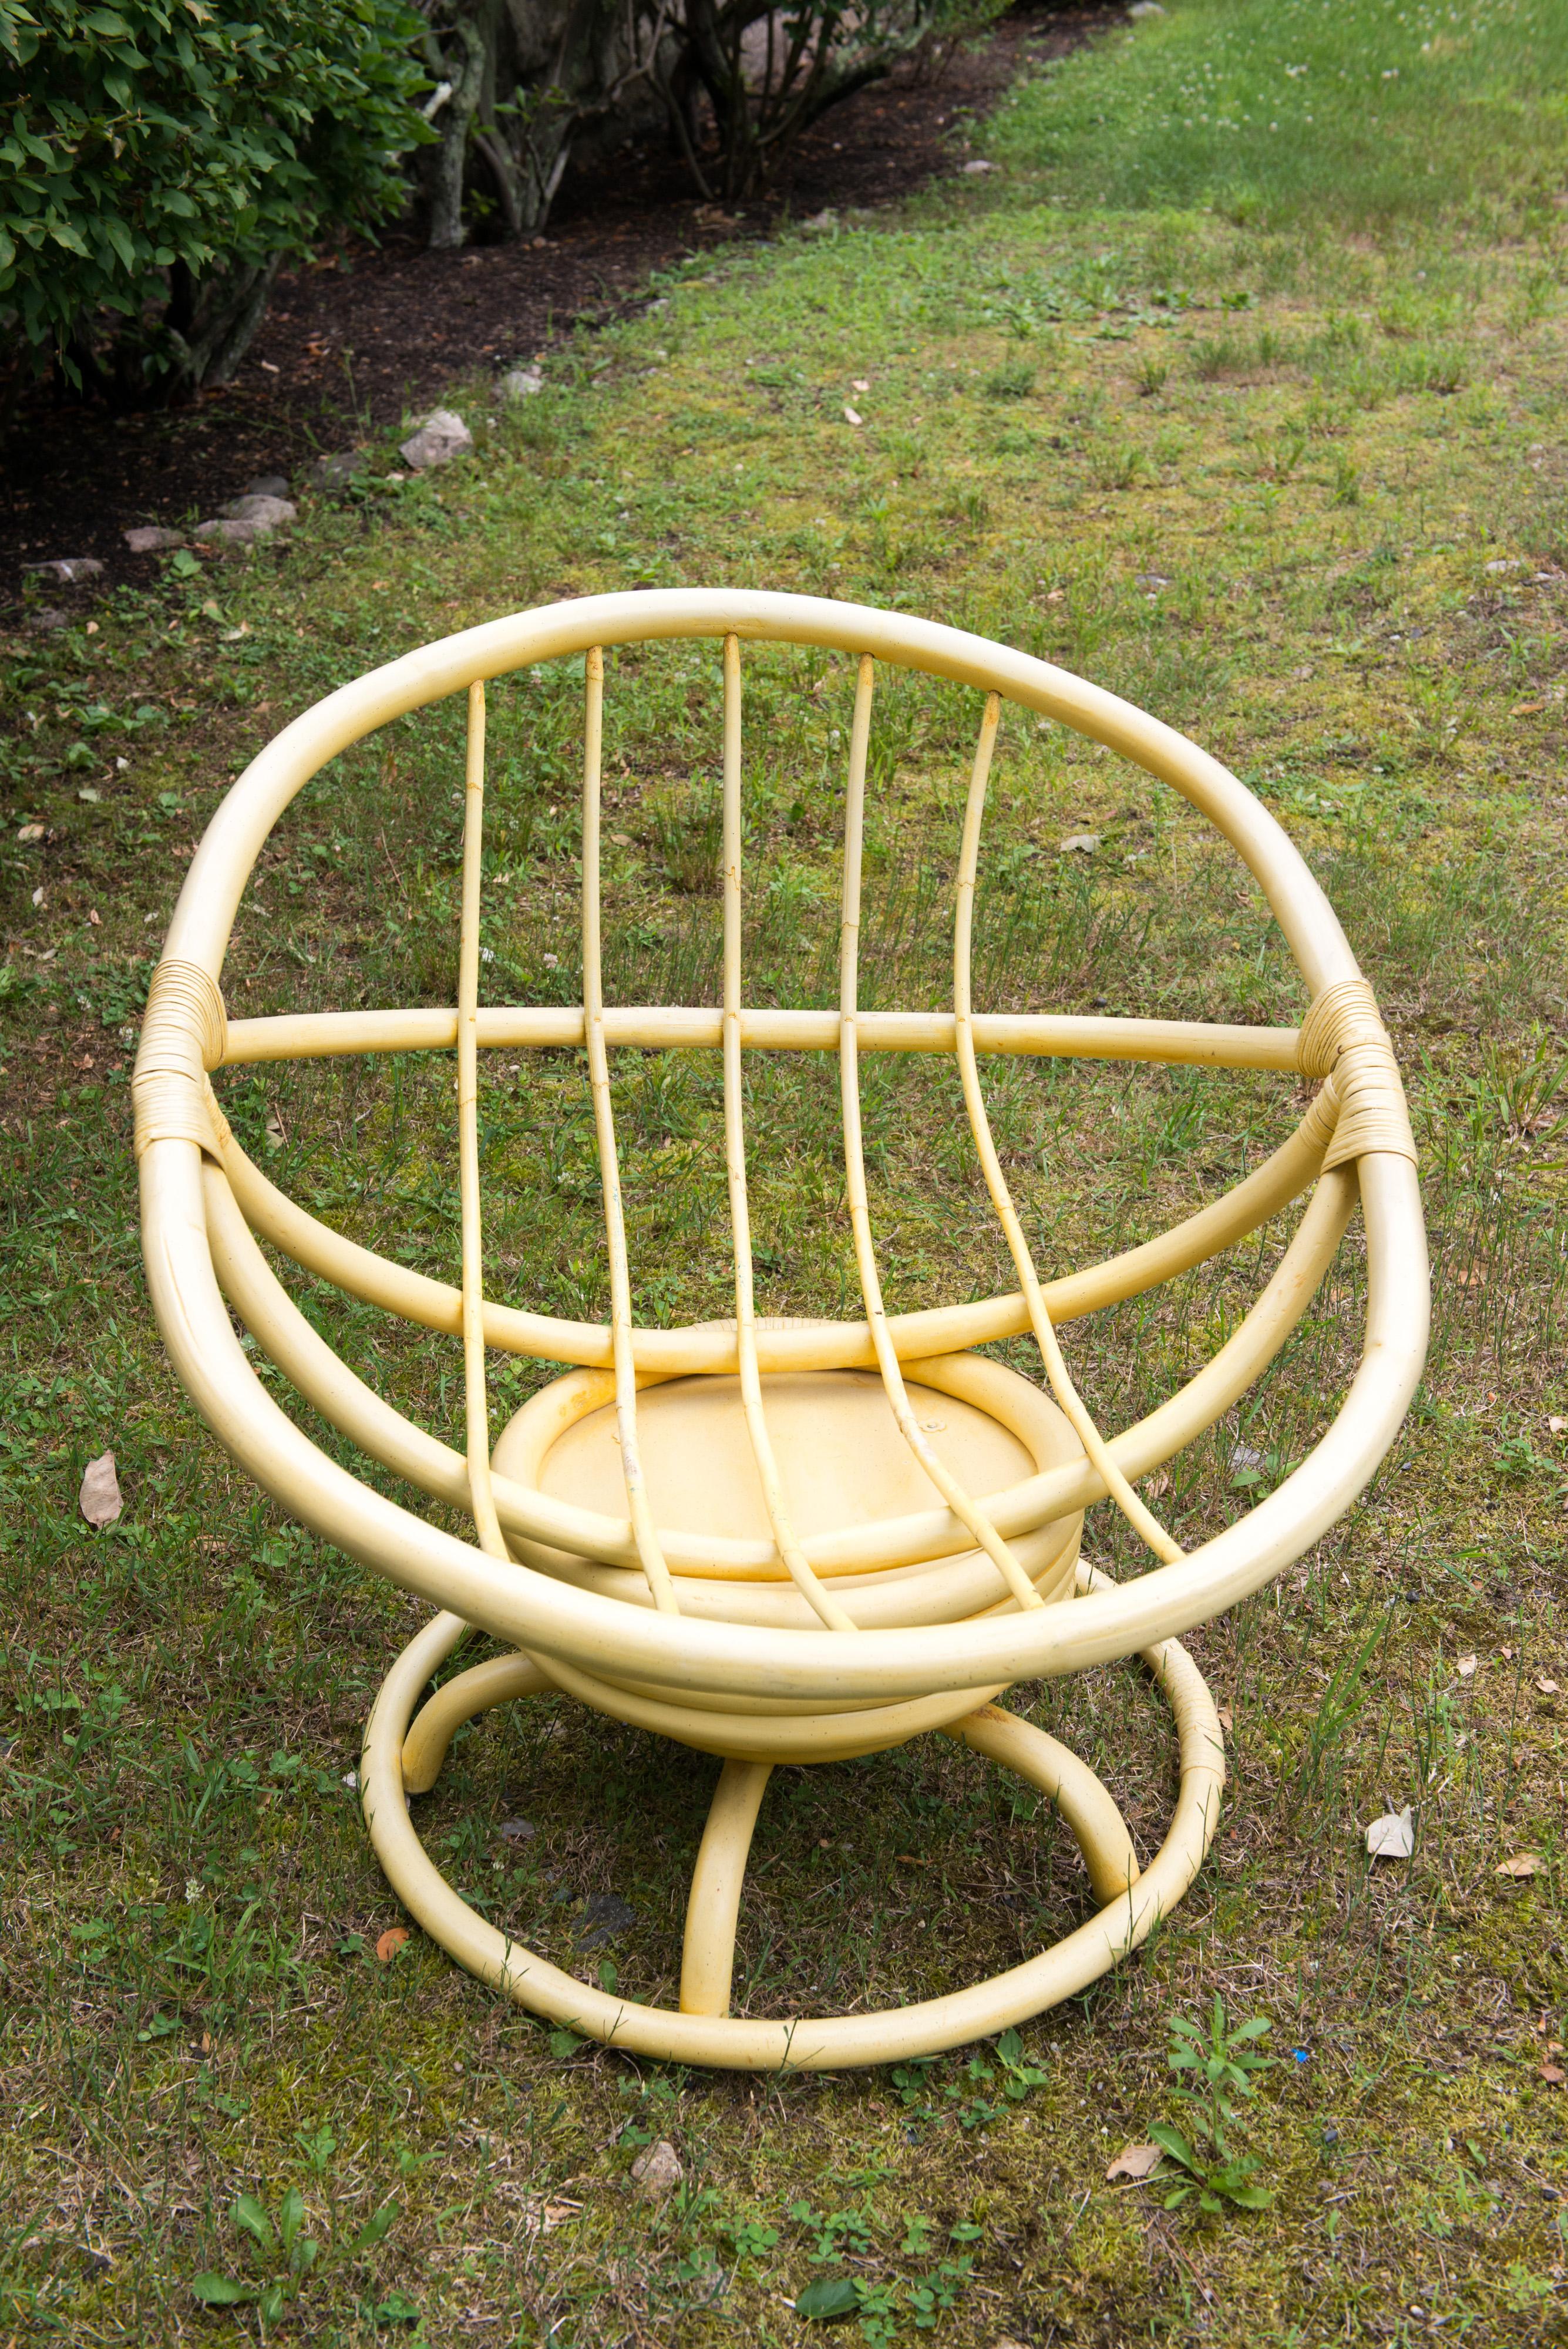 chaise à bascule vintage Ficks Reed des années 1970, en rotin jaune ou en faux bambou, avec finition jaune et tissu d'origine.
Remarquable bon état. Le coussin s'est raidi avec l'âge.